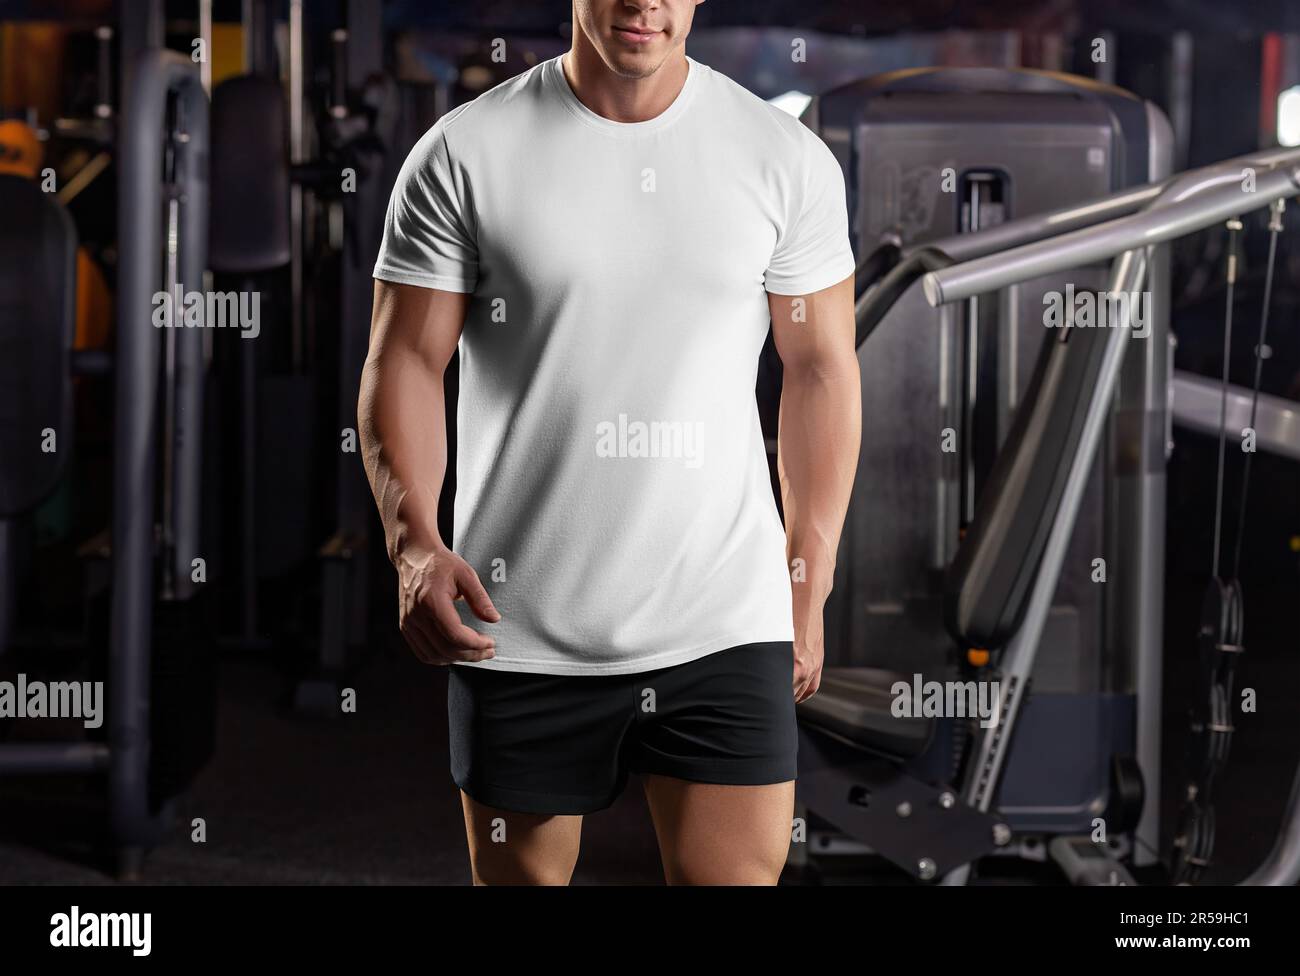 Modell eines weißen Sport-T-Shirts auf einem Sportler im Fitnessstudio, vor dem Hintergrund der Inventur, Trainingsbekleidung, Vorderansicht. Bekleidungsvorlage auf der Stockfoto